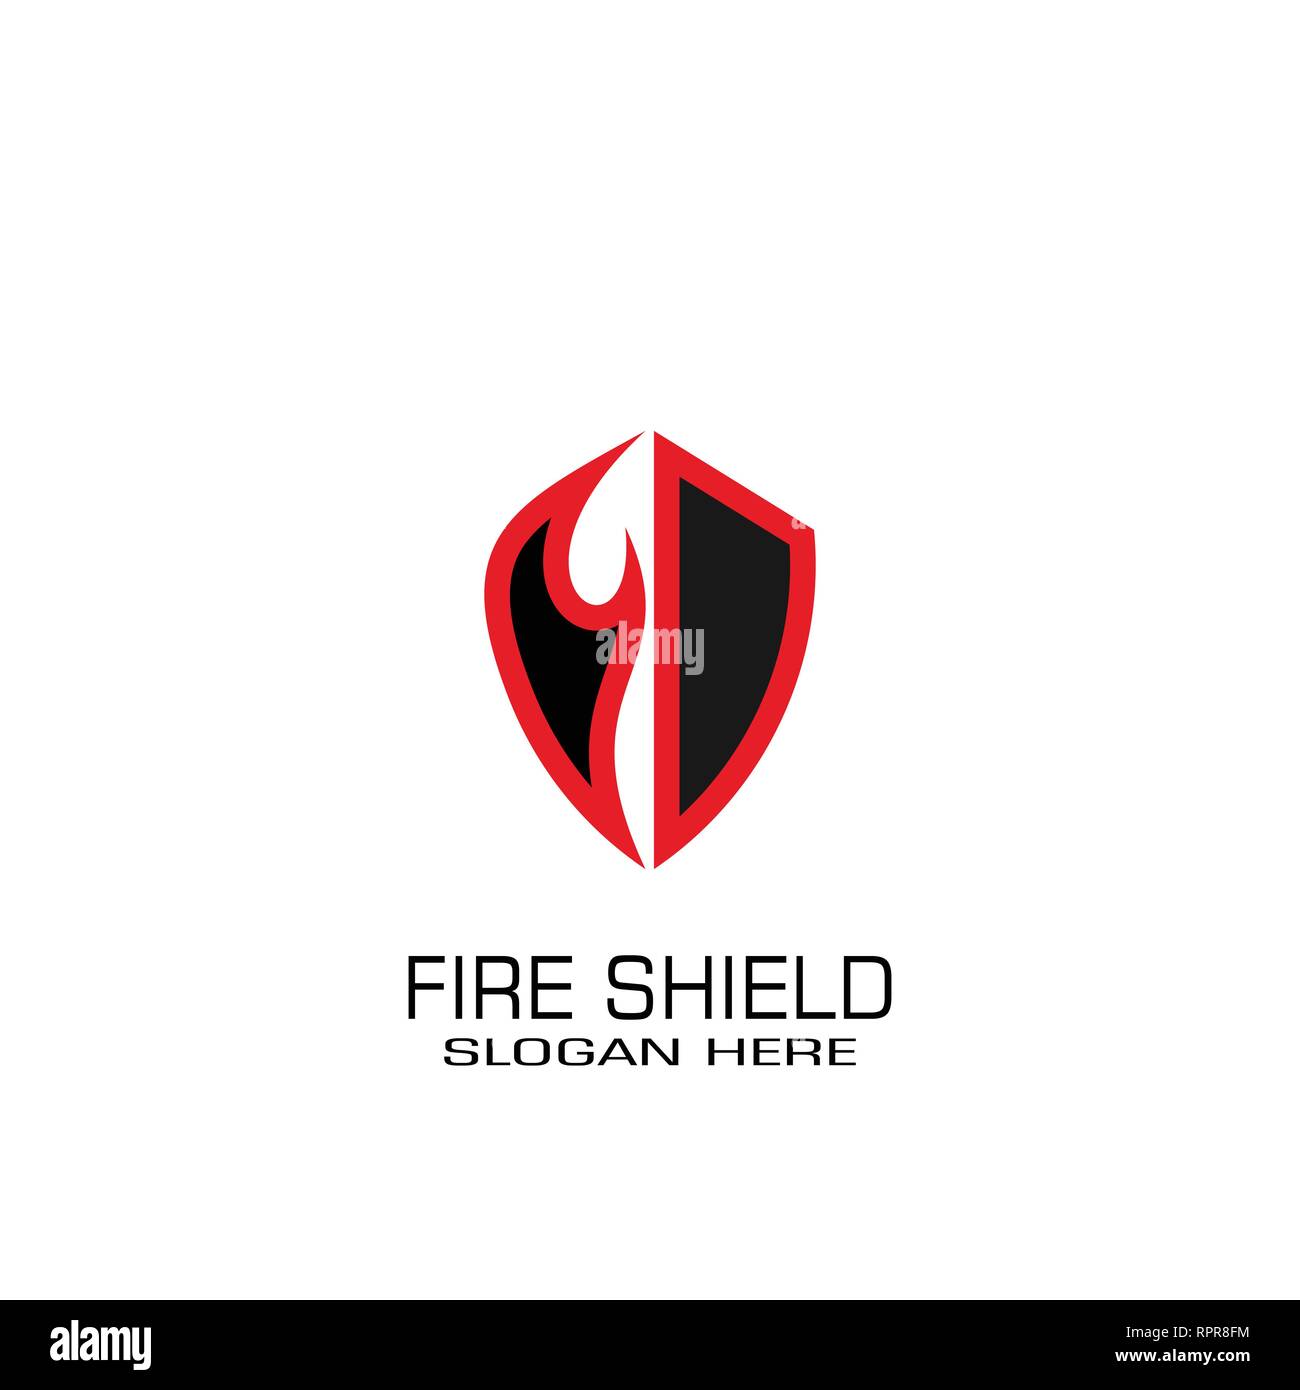 Fire shield logo vector design, abstract business logo. Stock Vector